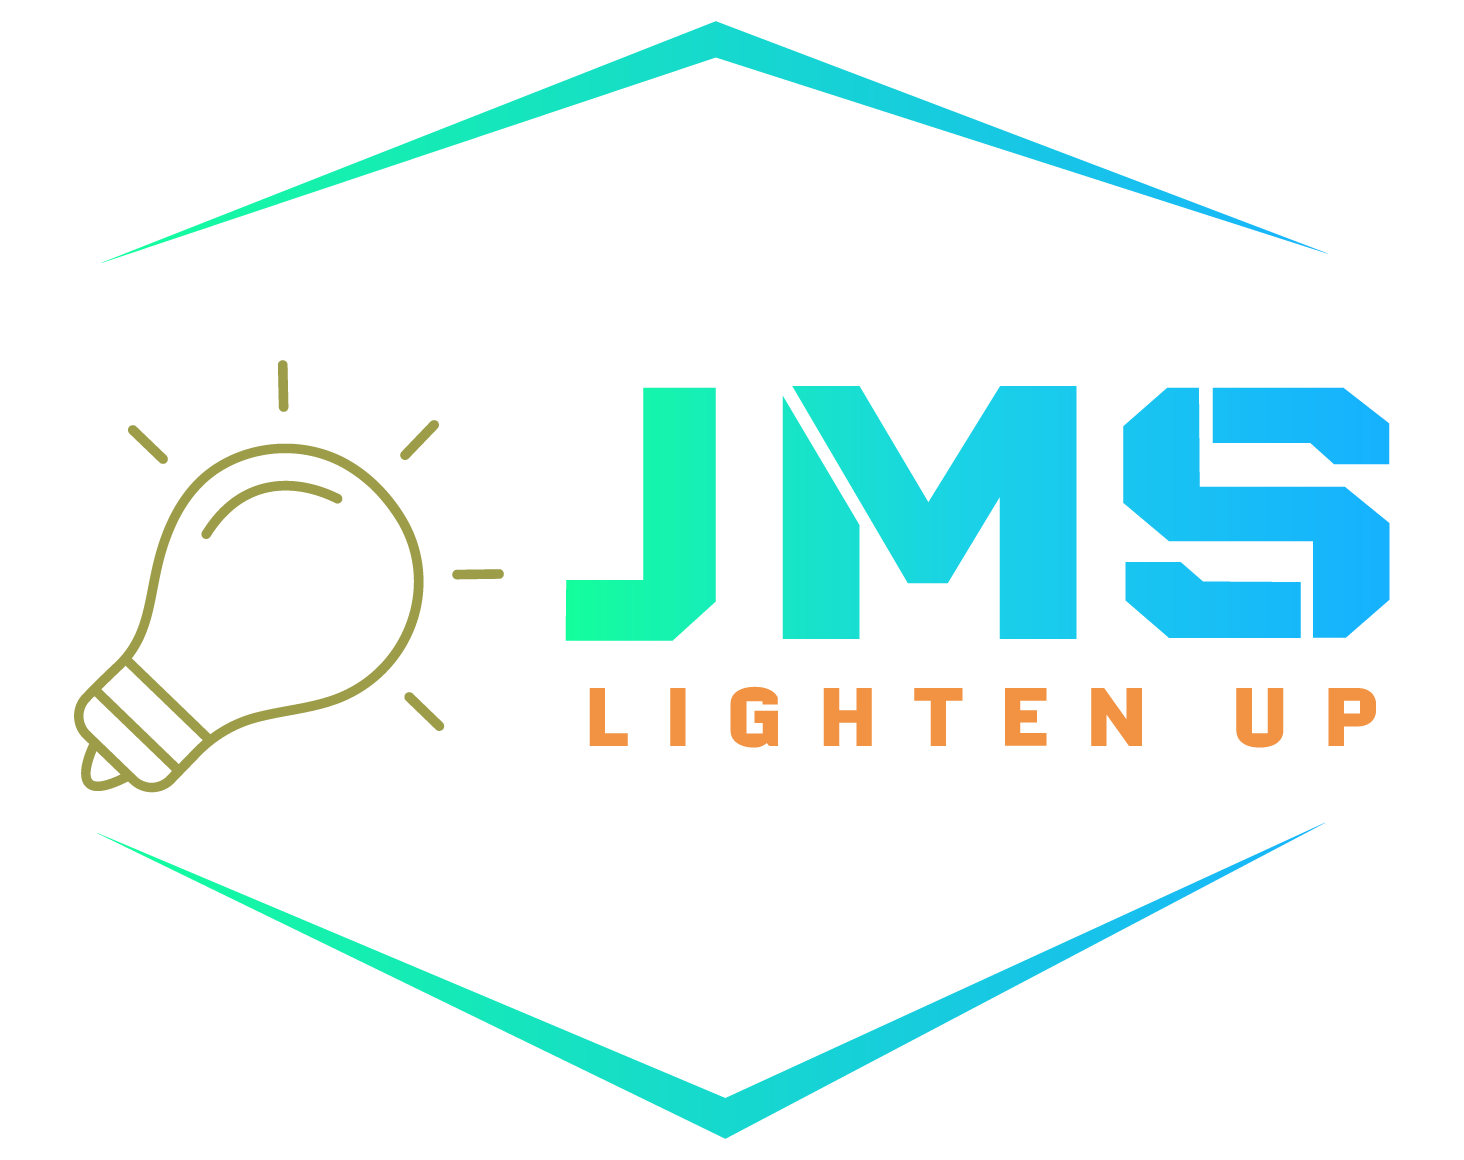 JMS Lighten Up